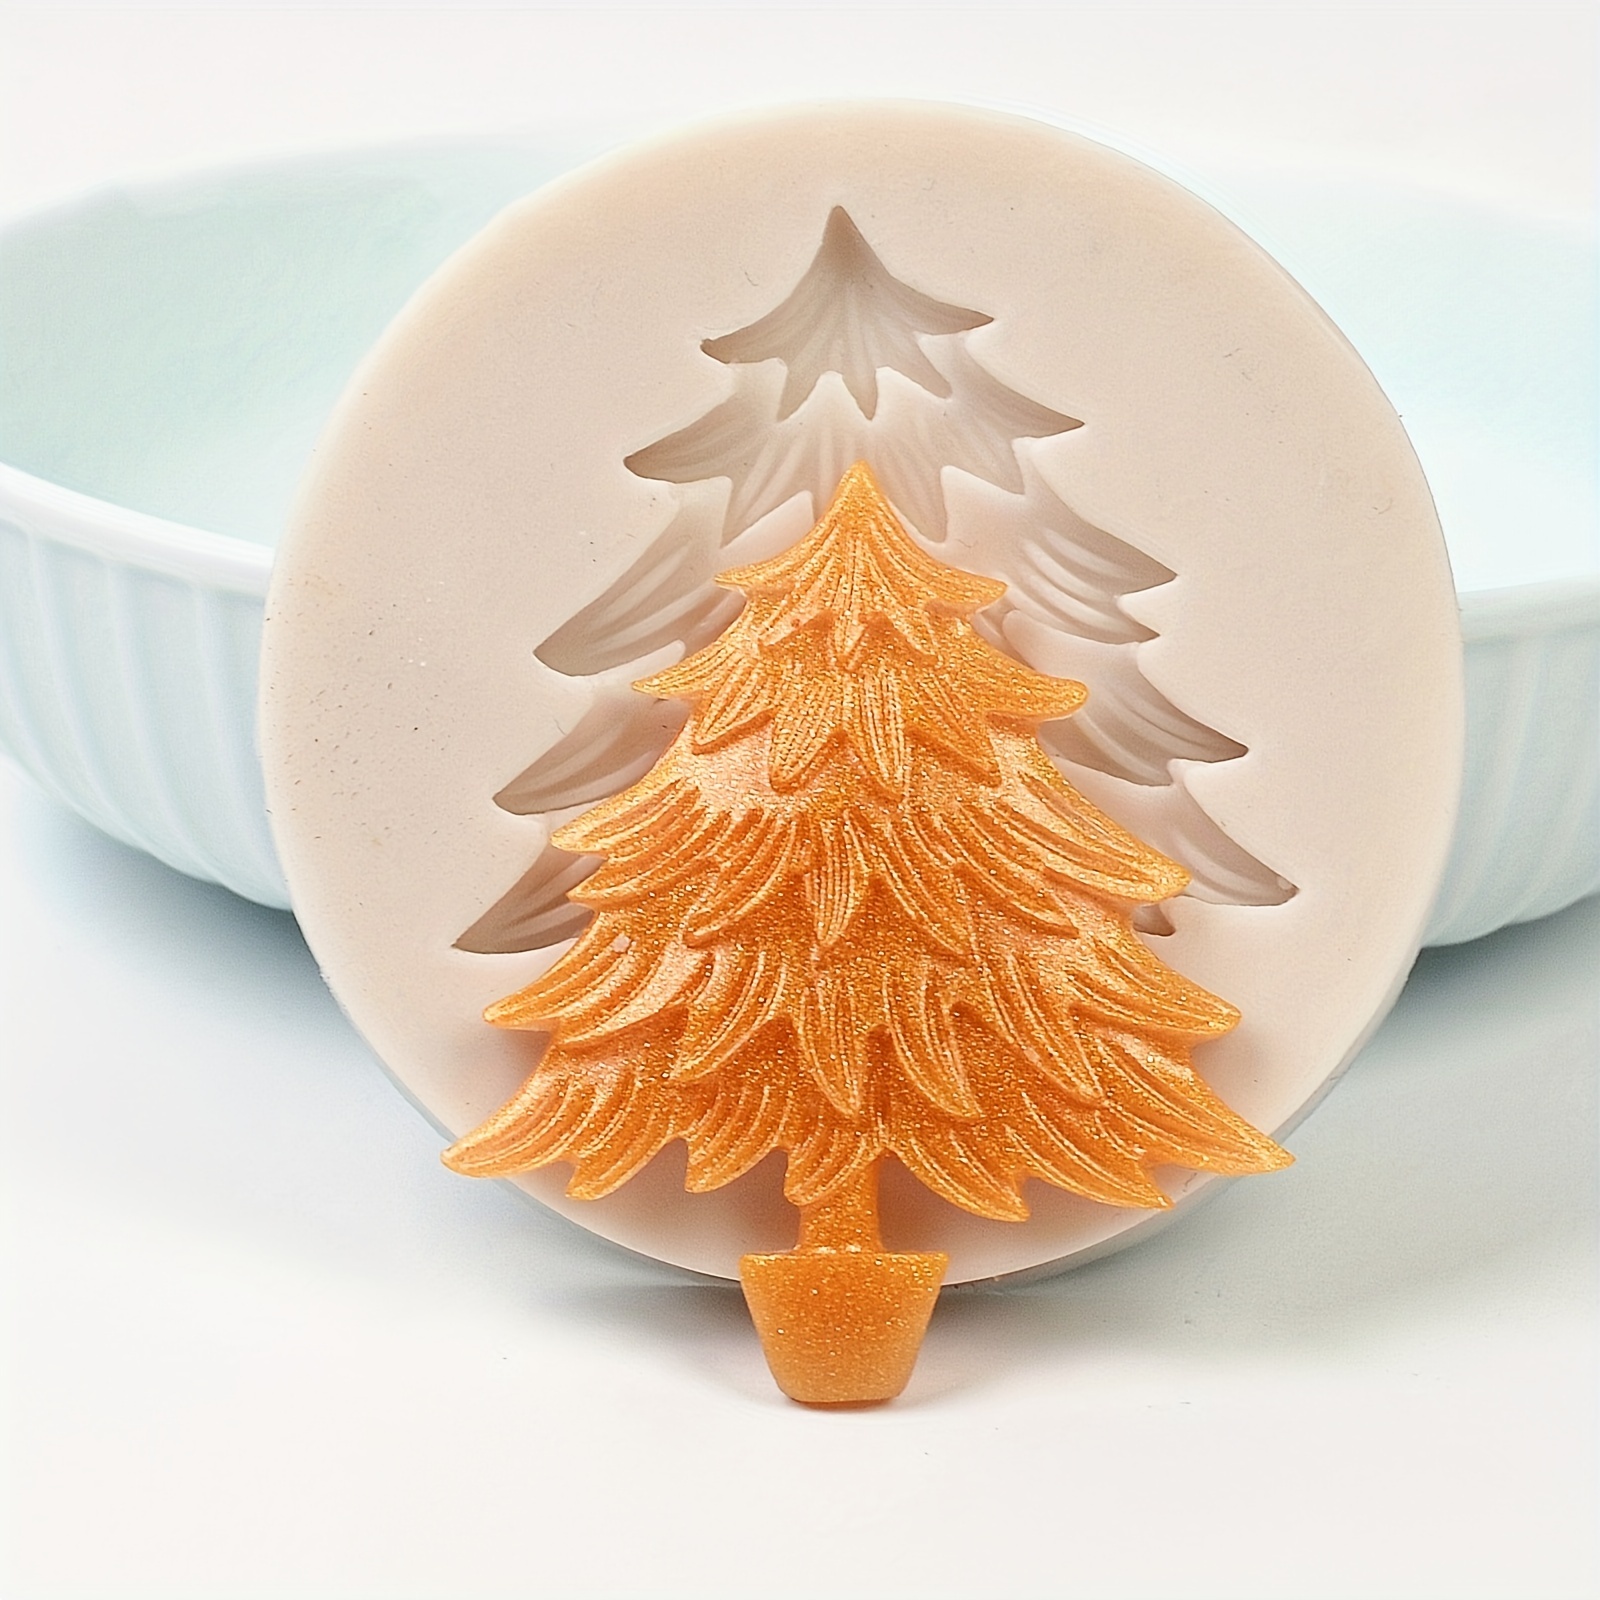 Christmas Tree Silicone Mold Cake Pan Reusable Christmas Baking Molds